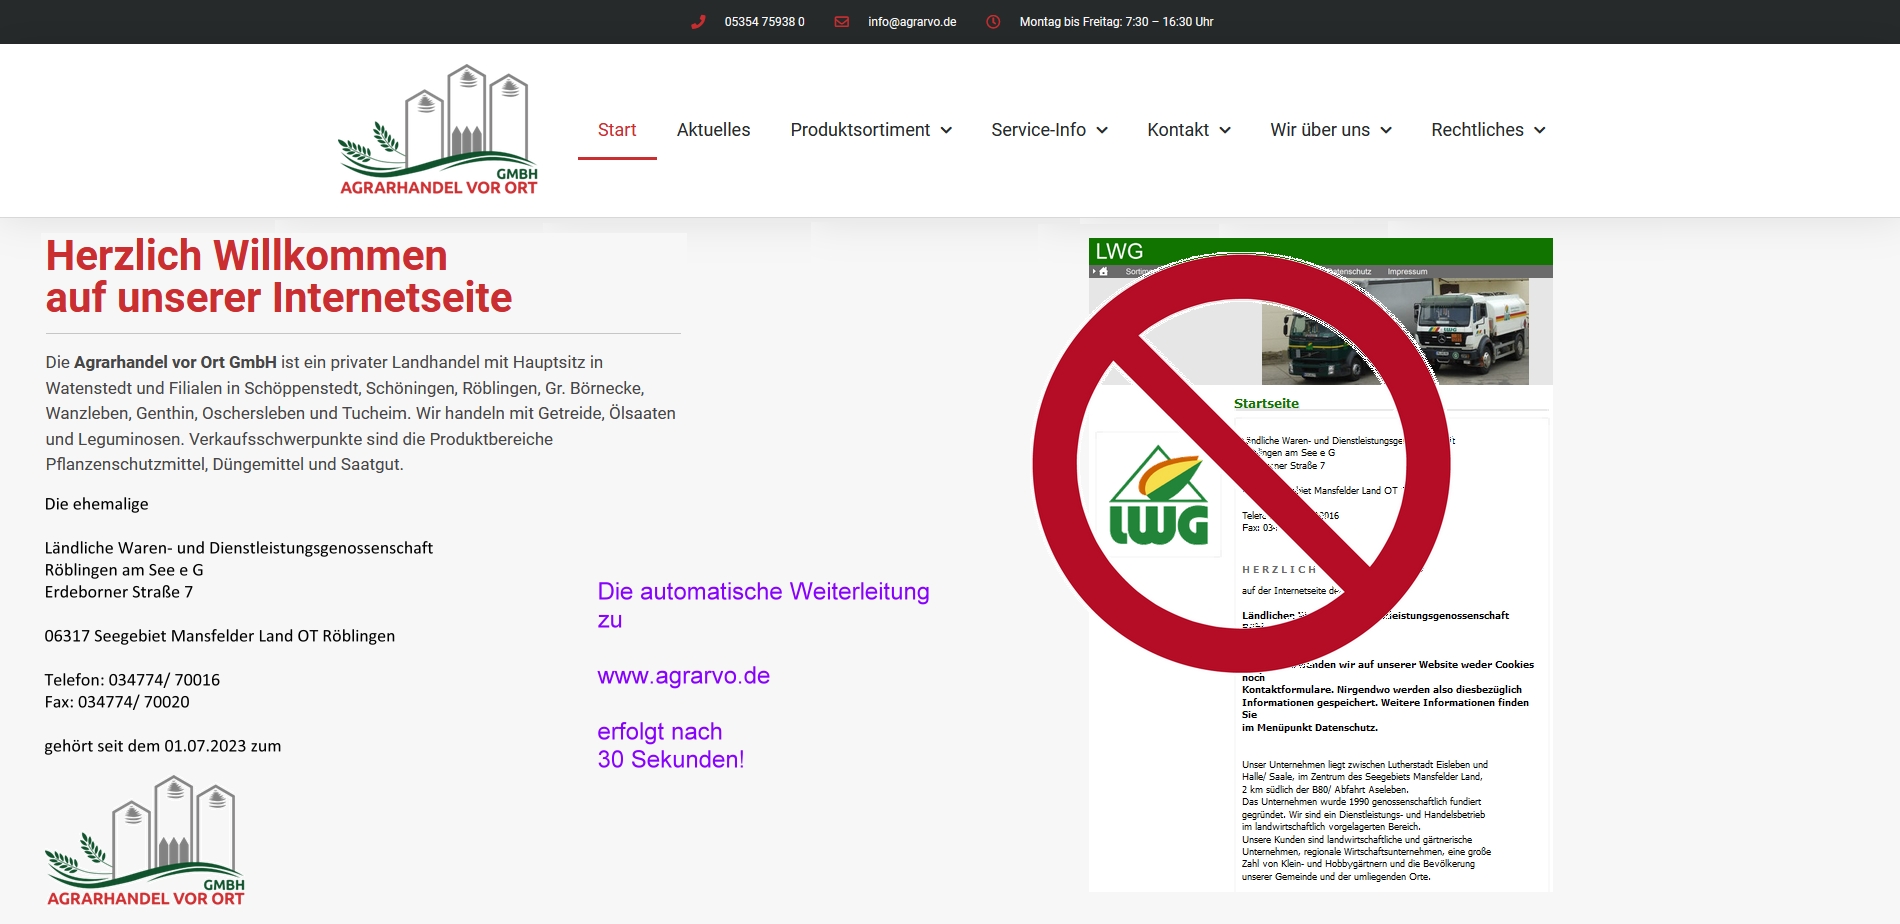 Automatische Weiterleitung zu www.agrarvo.de